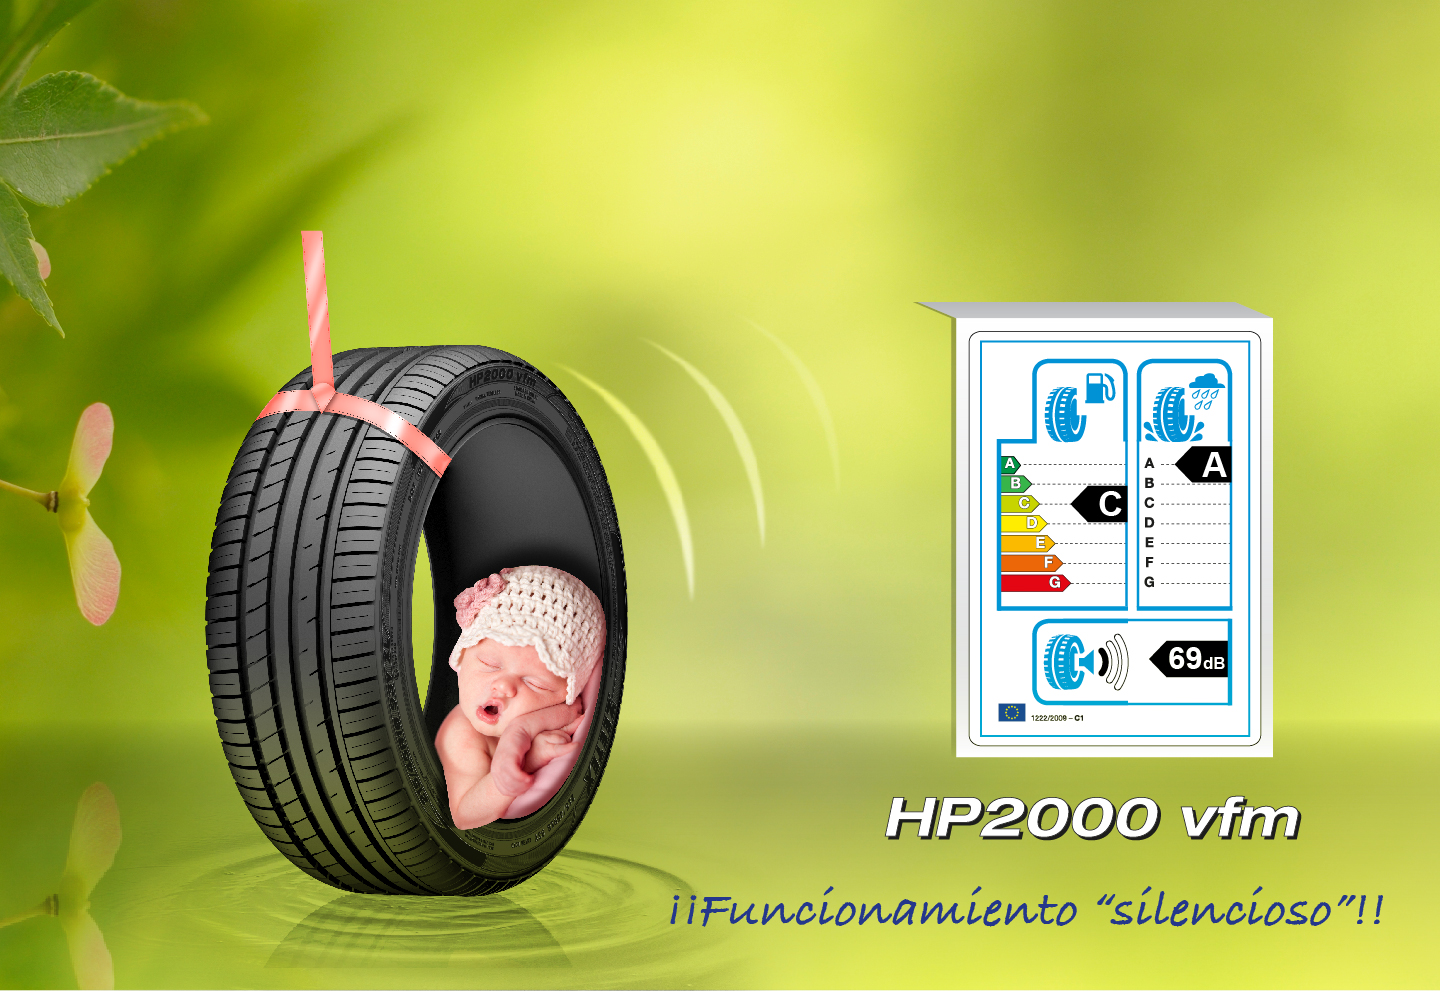 HP2000-vfm-Spanish